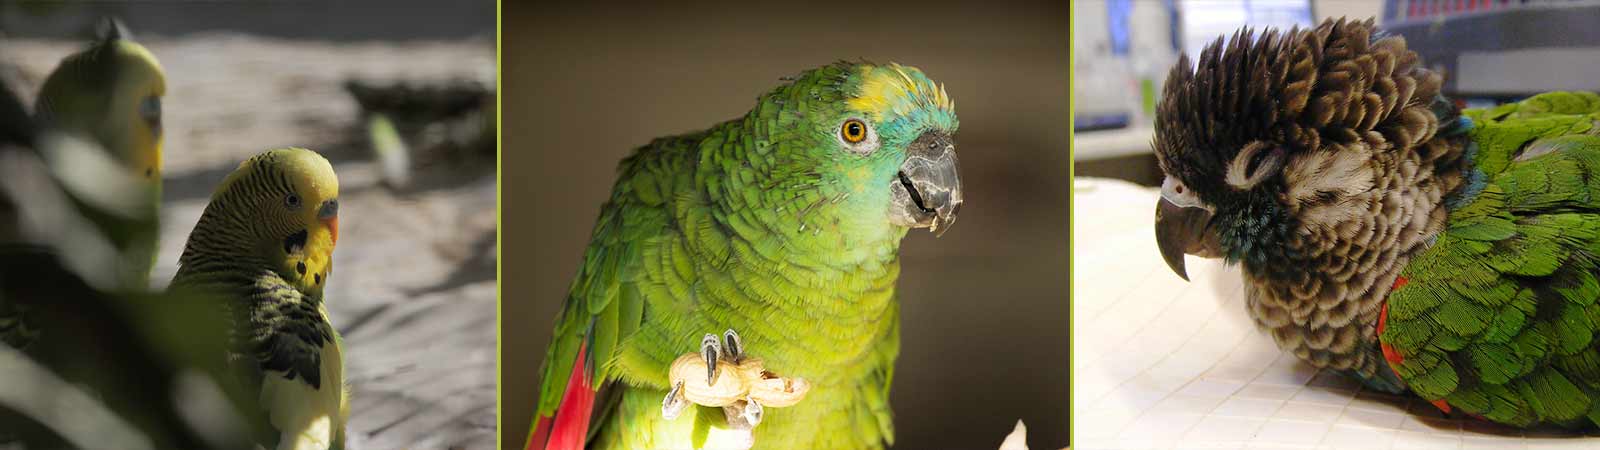 Tierarztpraxis Ziervögel (Papageien)